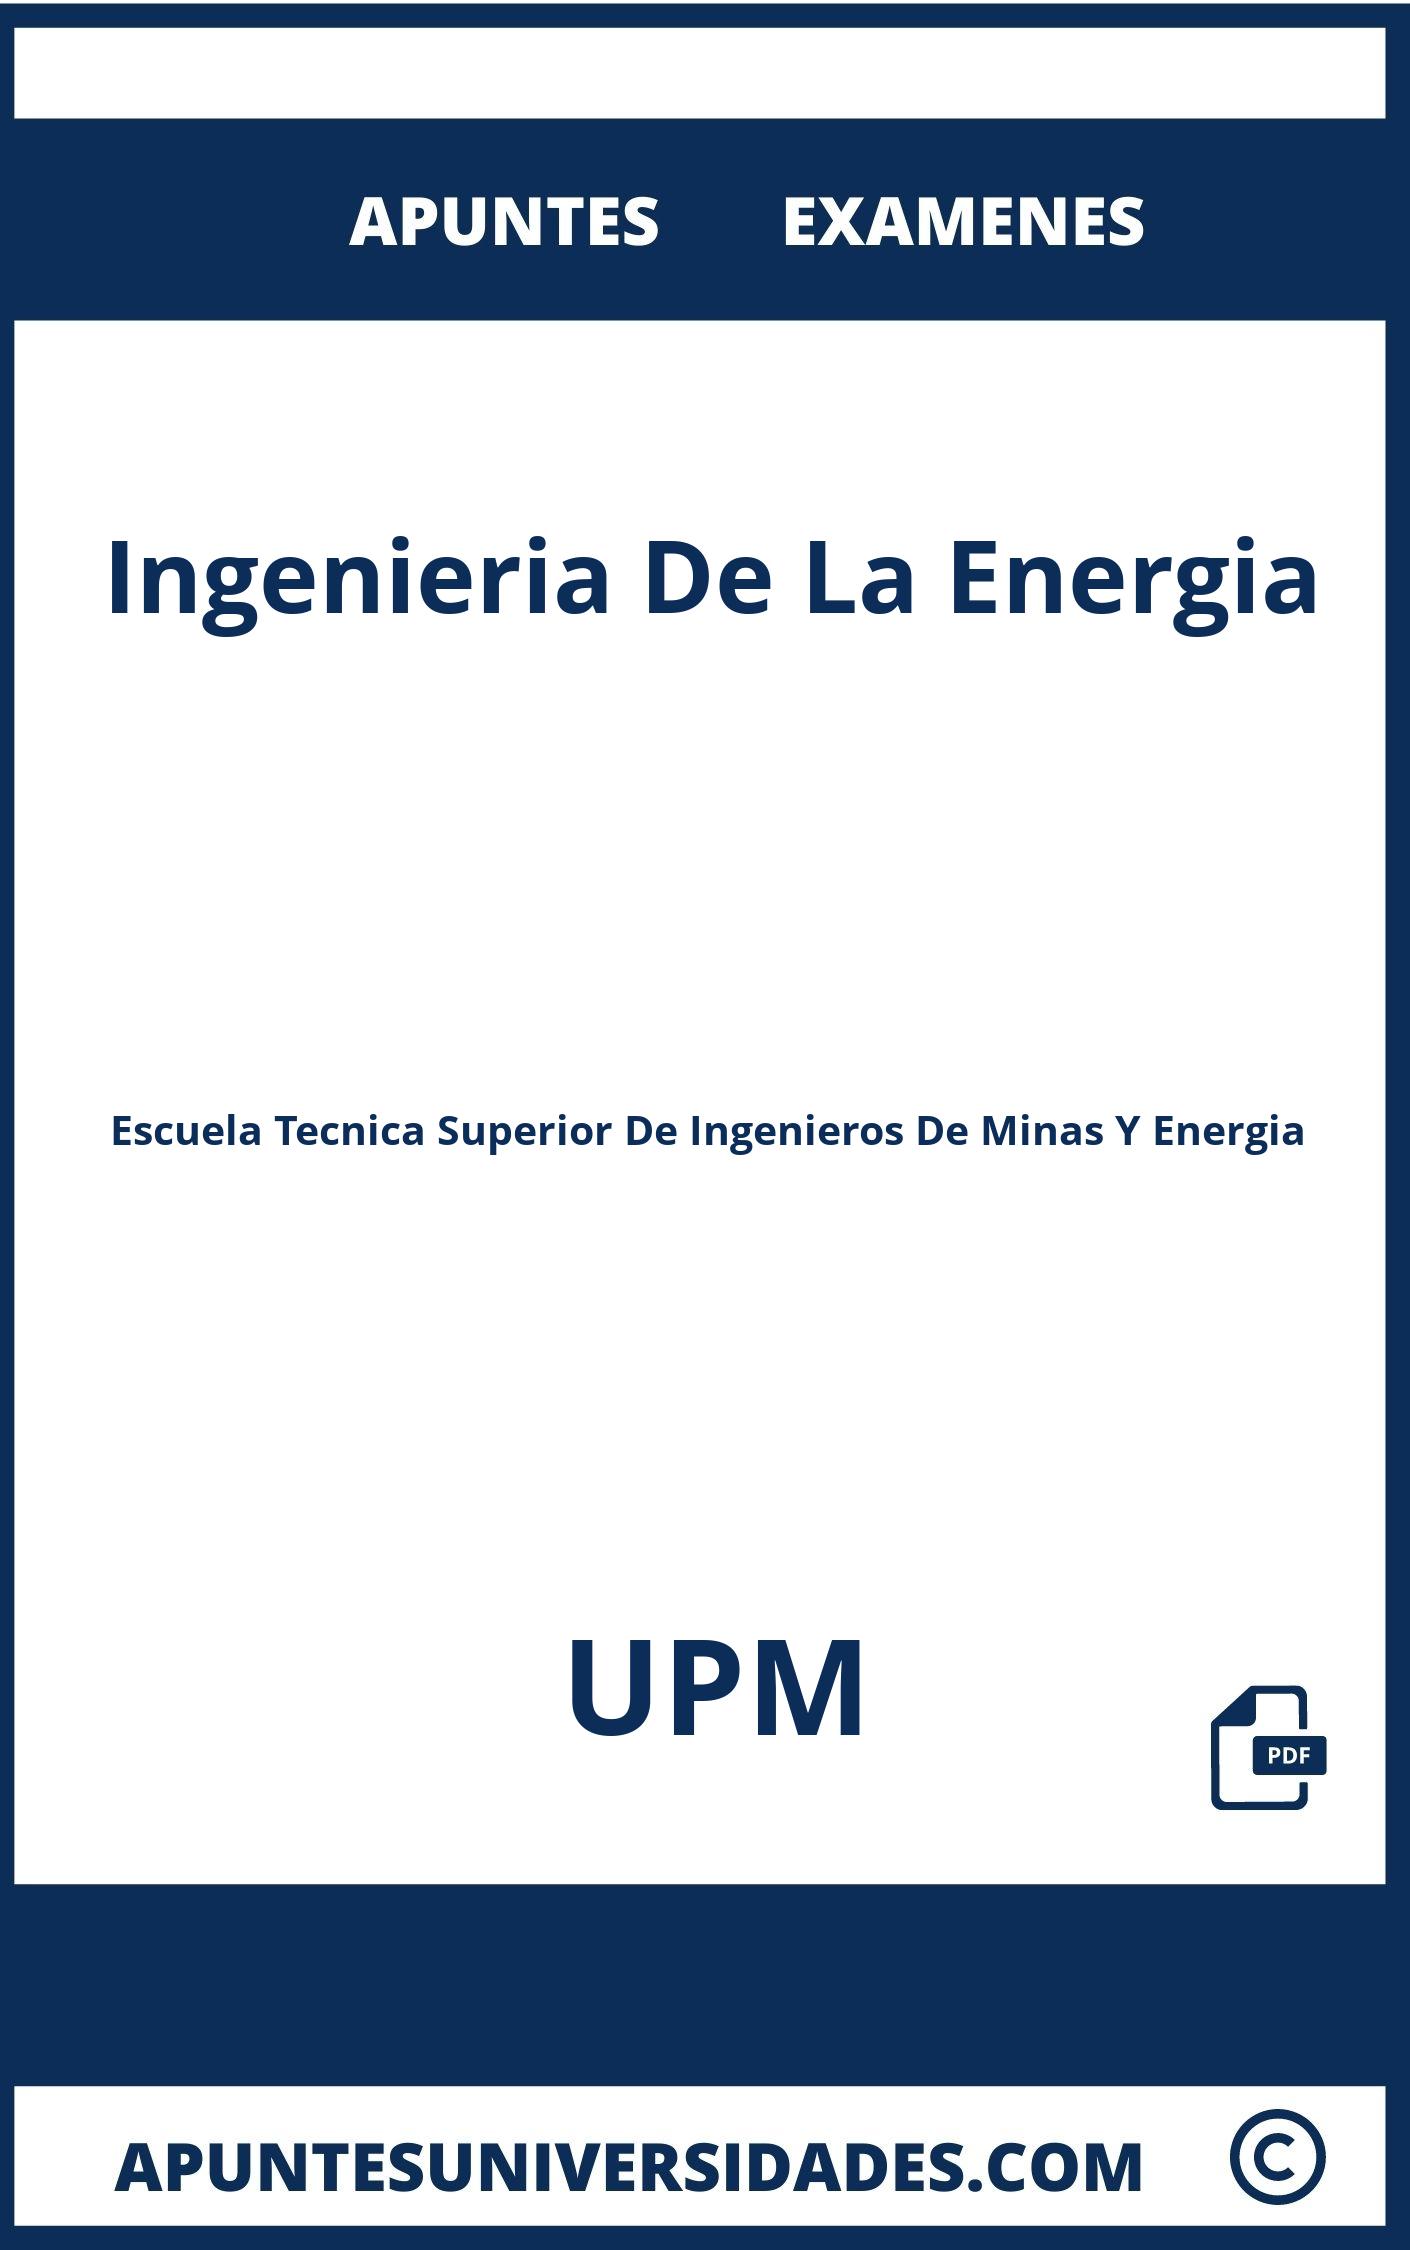 Apuntes y Examenes Ingenieria De La Energia UPM